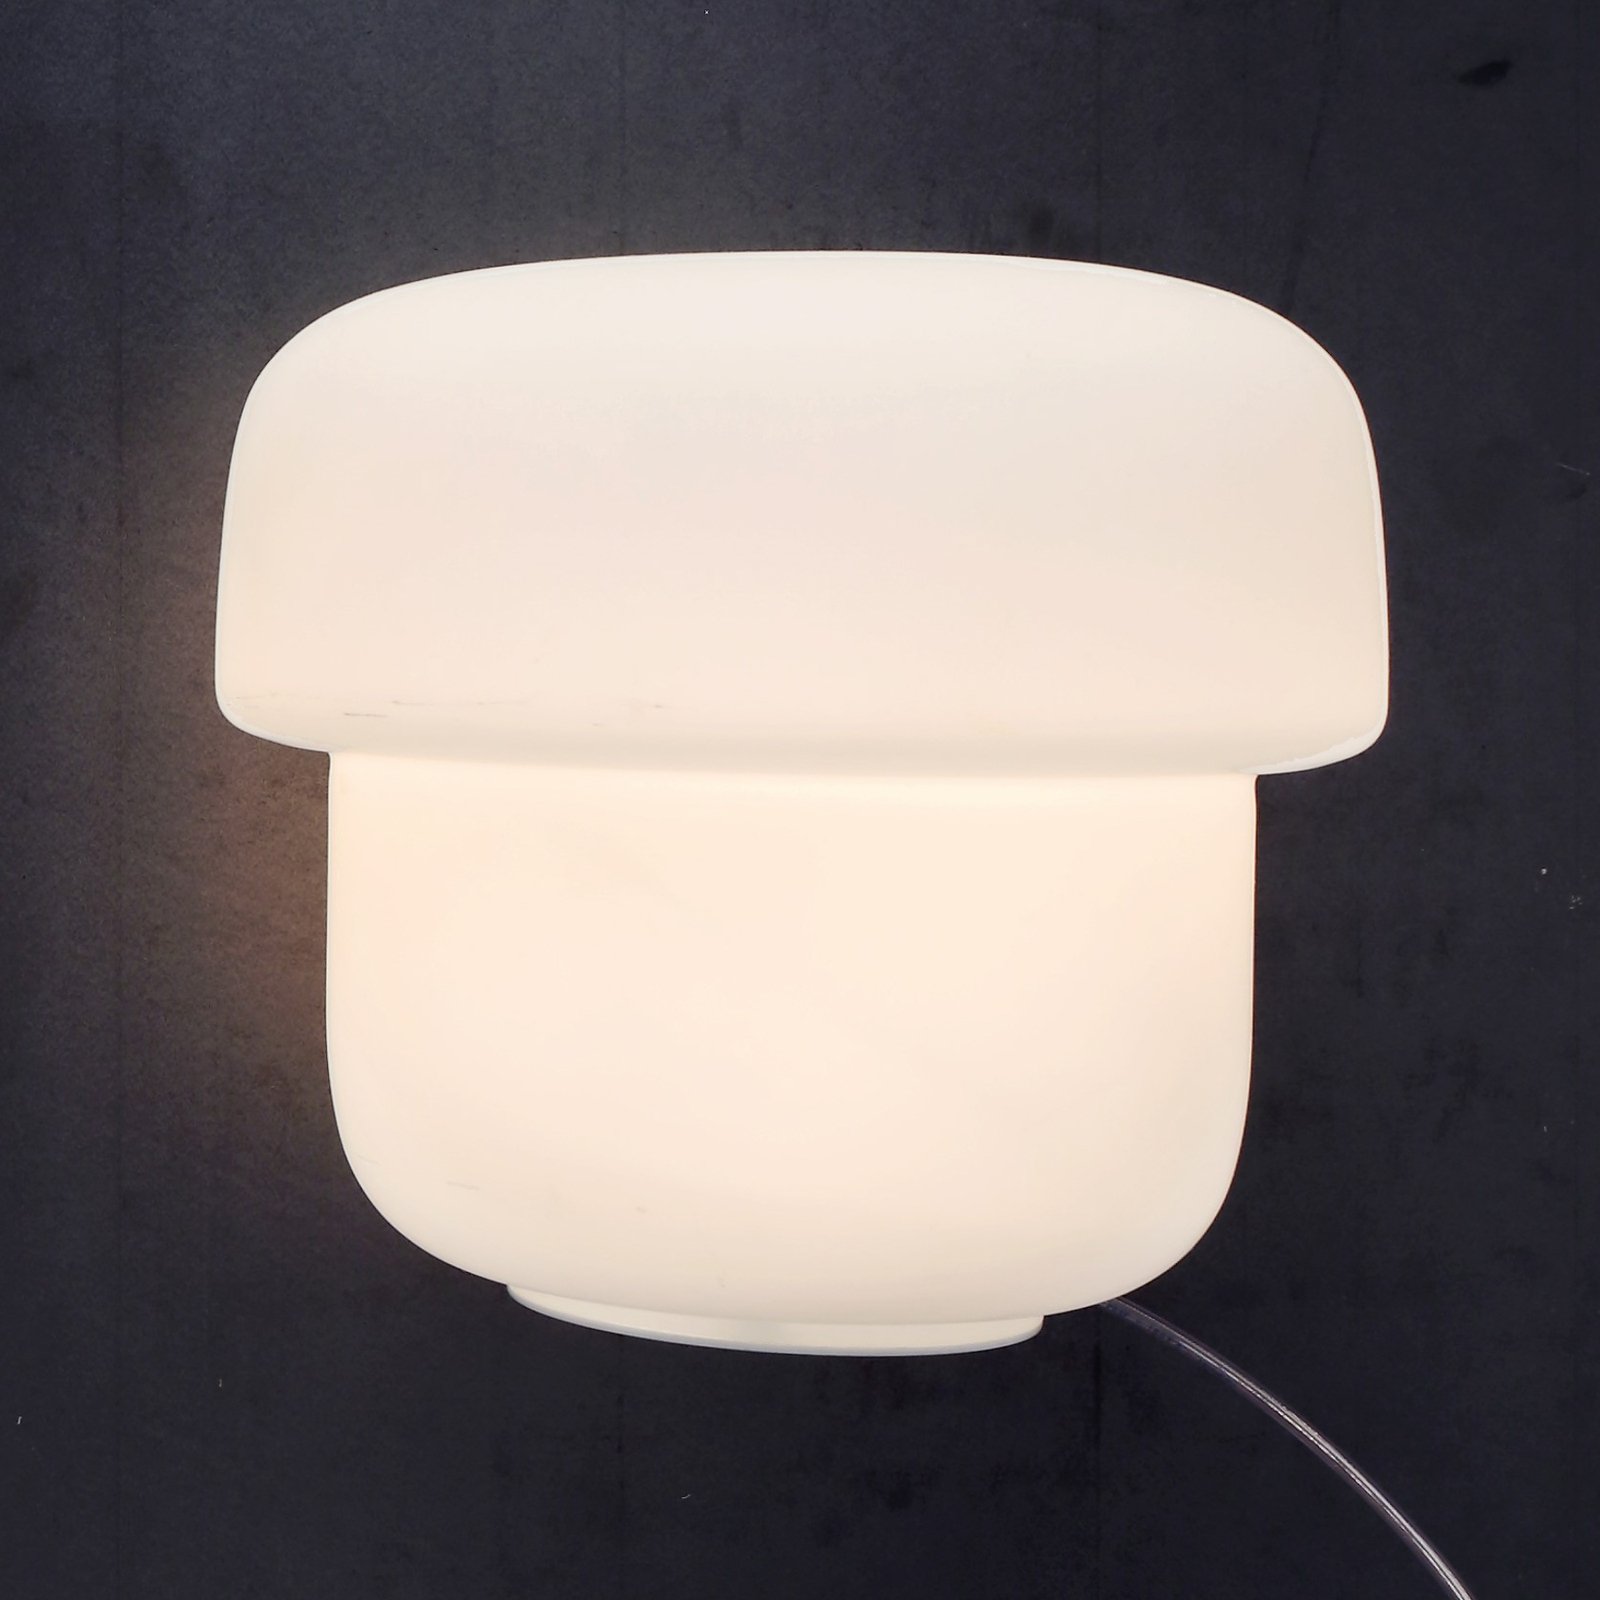 Prandina Mico T1 asztali lámpa, opálüveg, Ø24 cm